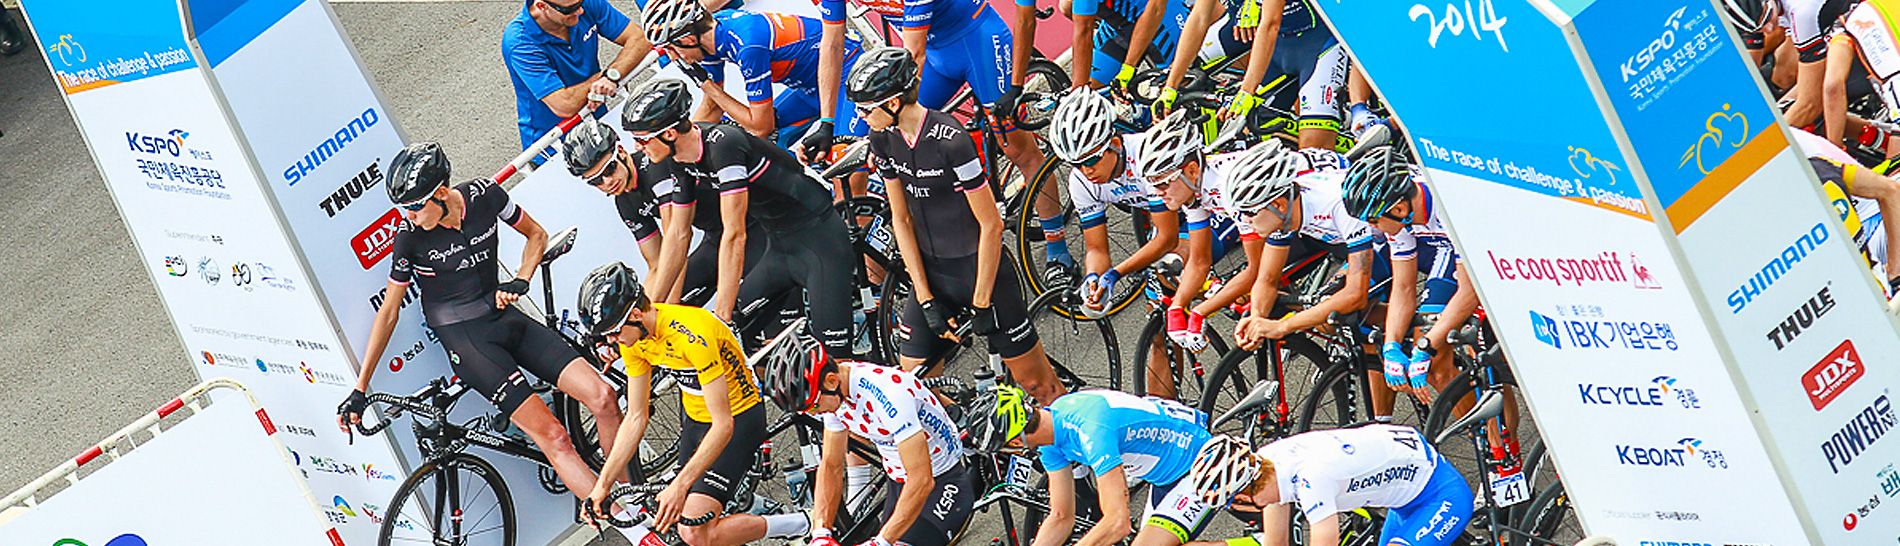 Tour de Korea: Start gantry showing sponsor branding and riders awaiting the start